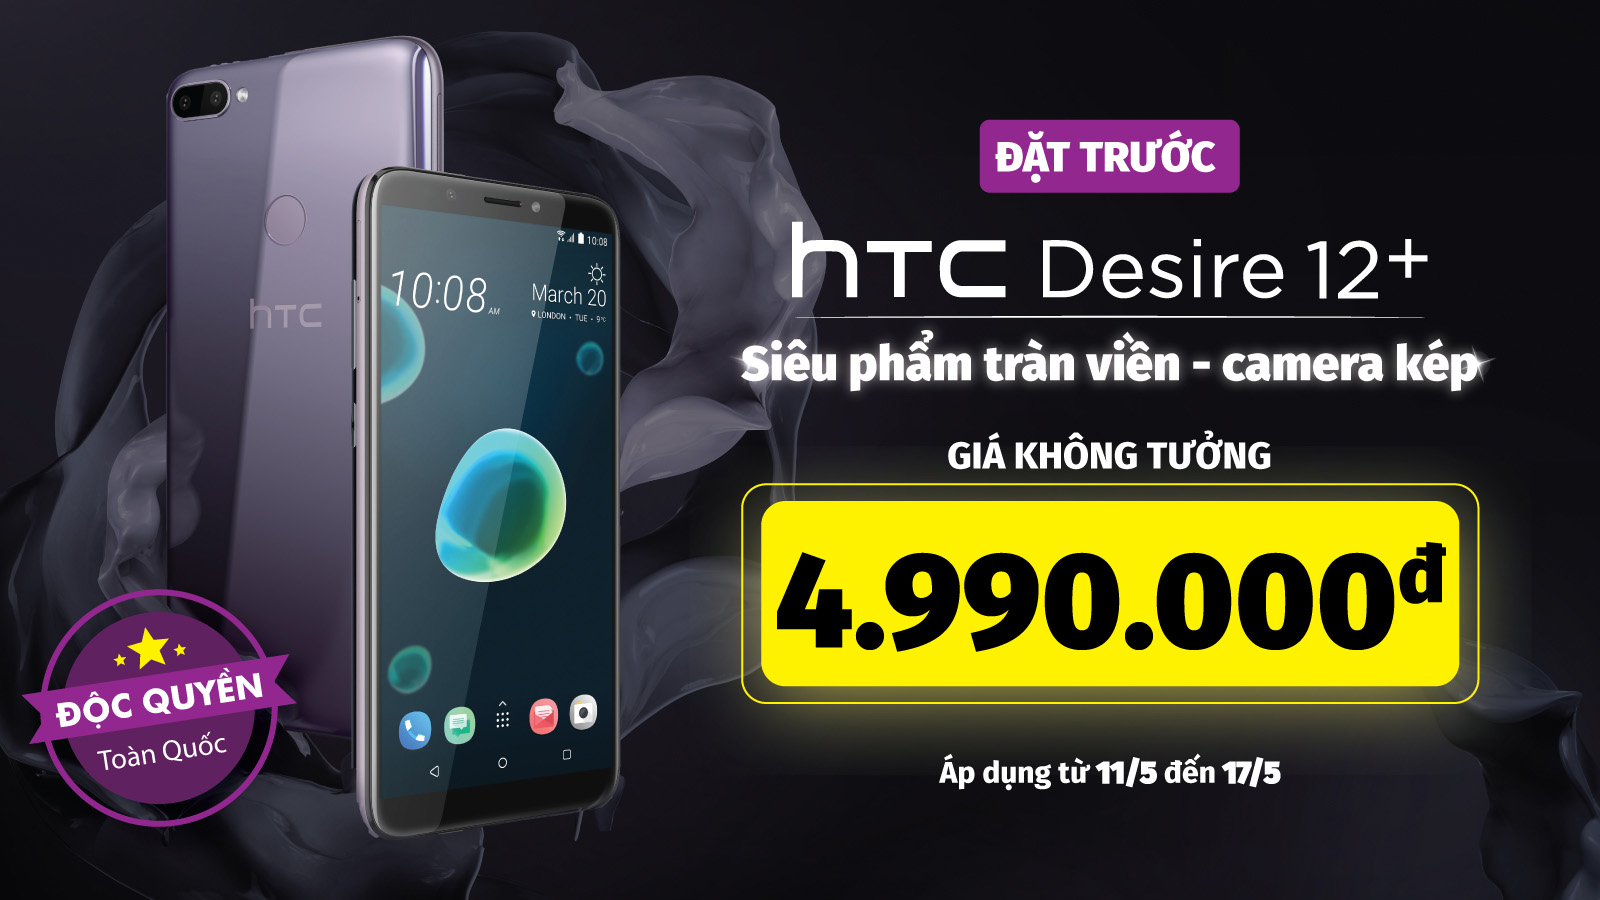 Đặt trước HTC Desire 12+ – Siêu phẩm tràn viền, camera kép với giá cực rẻ chỉ 4.990.000đ